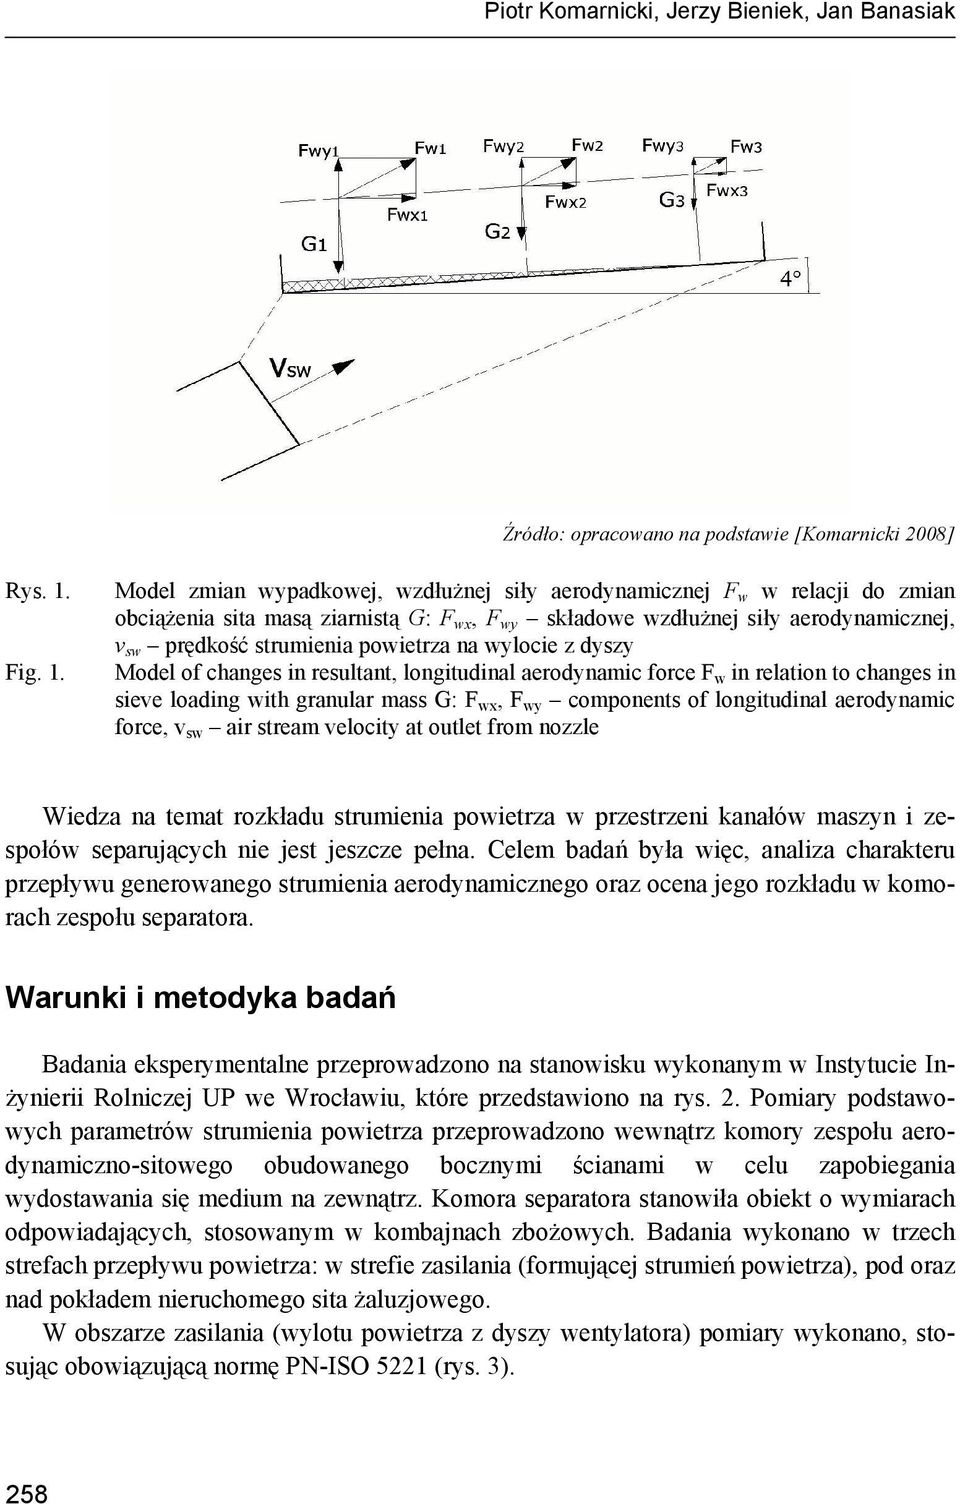 Model zmian wypadkowej, wzdłużnej siły aerodynamicznej F w w relacji do zmian obciążenia sita masą ziarnistą G: F wx, F wy składowe wzdłużnej siły aerodynamicznej, v sw prędkość strumienia powietrza